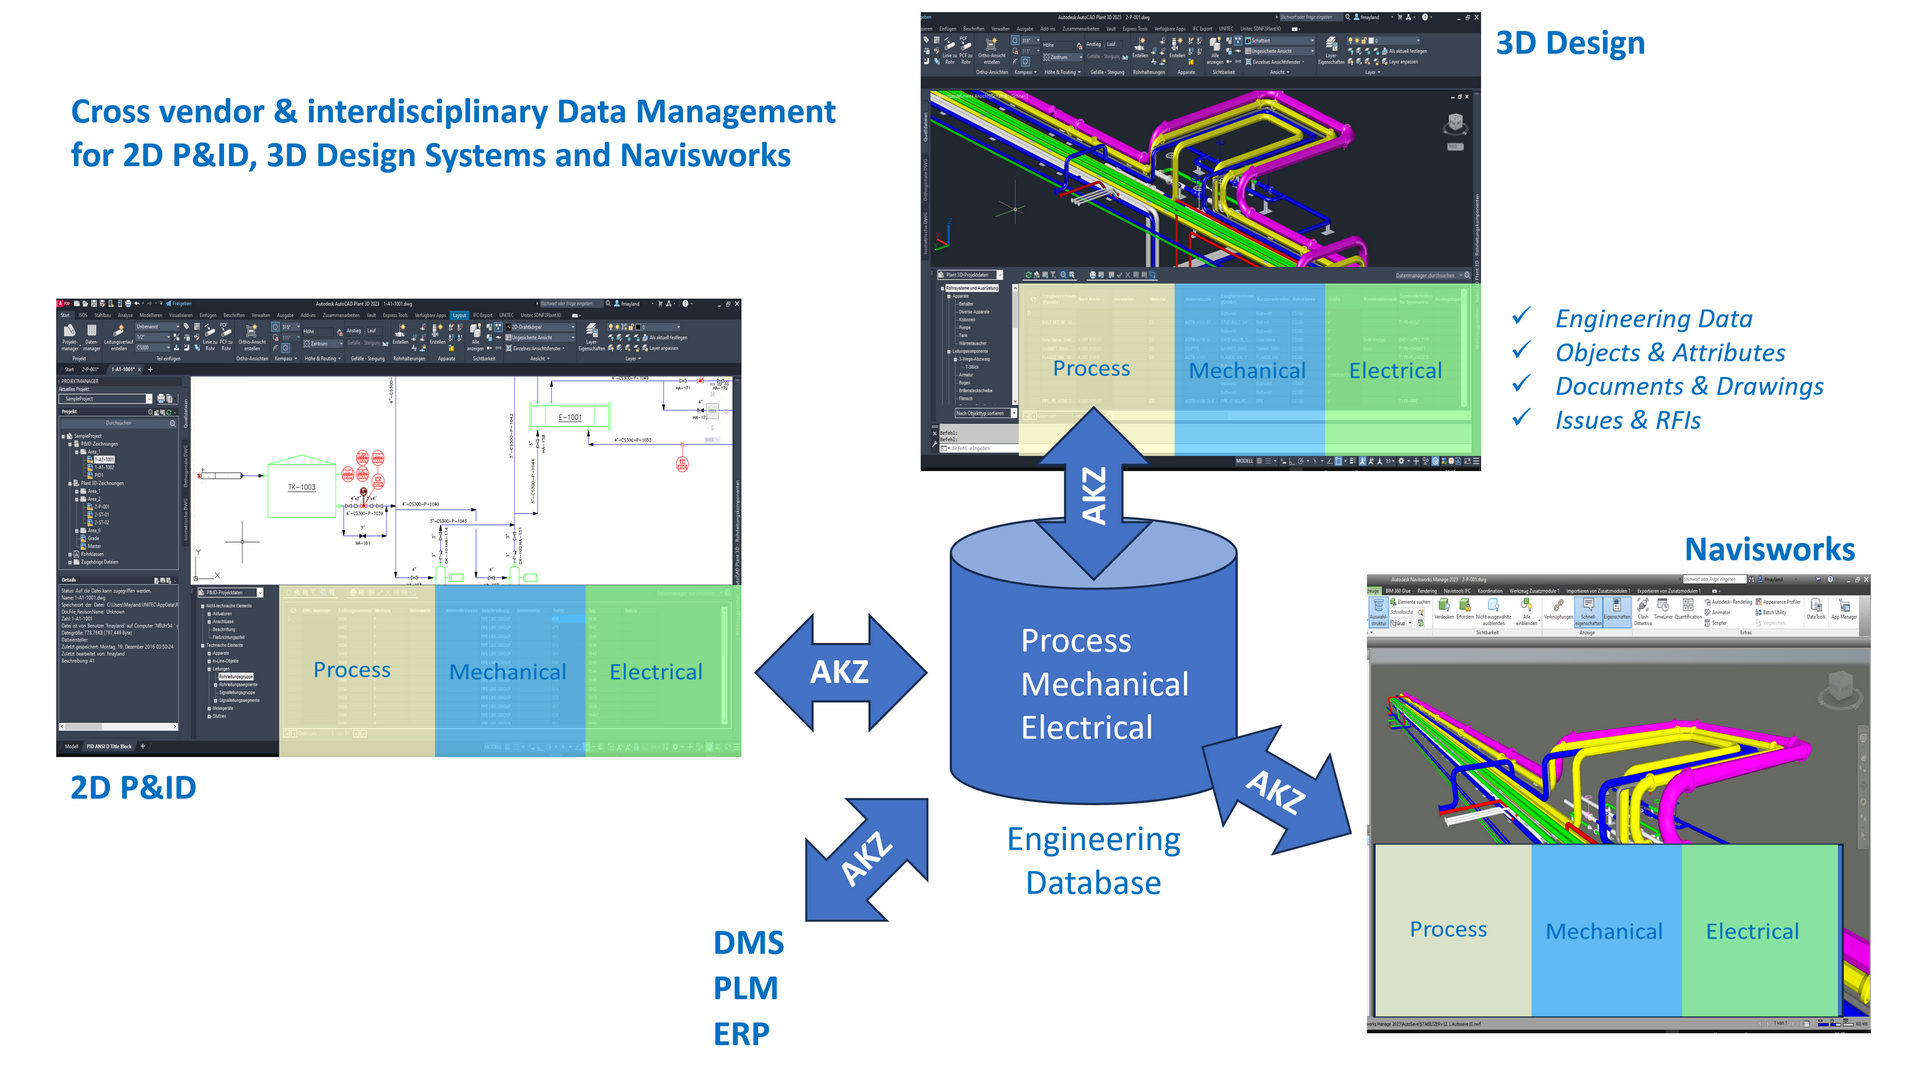 Herstellerübergreifende und interdisziplinäre Datenverwaltung für 2D P&ID, 3D Design Systeme und Navisworks